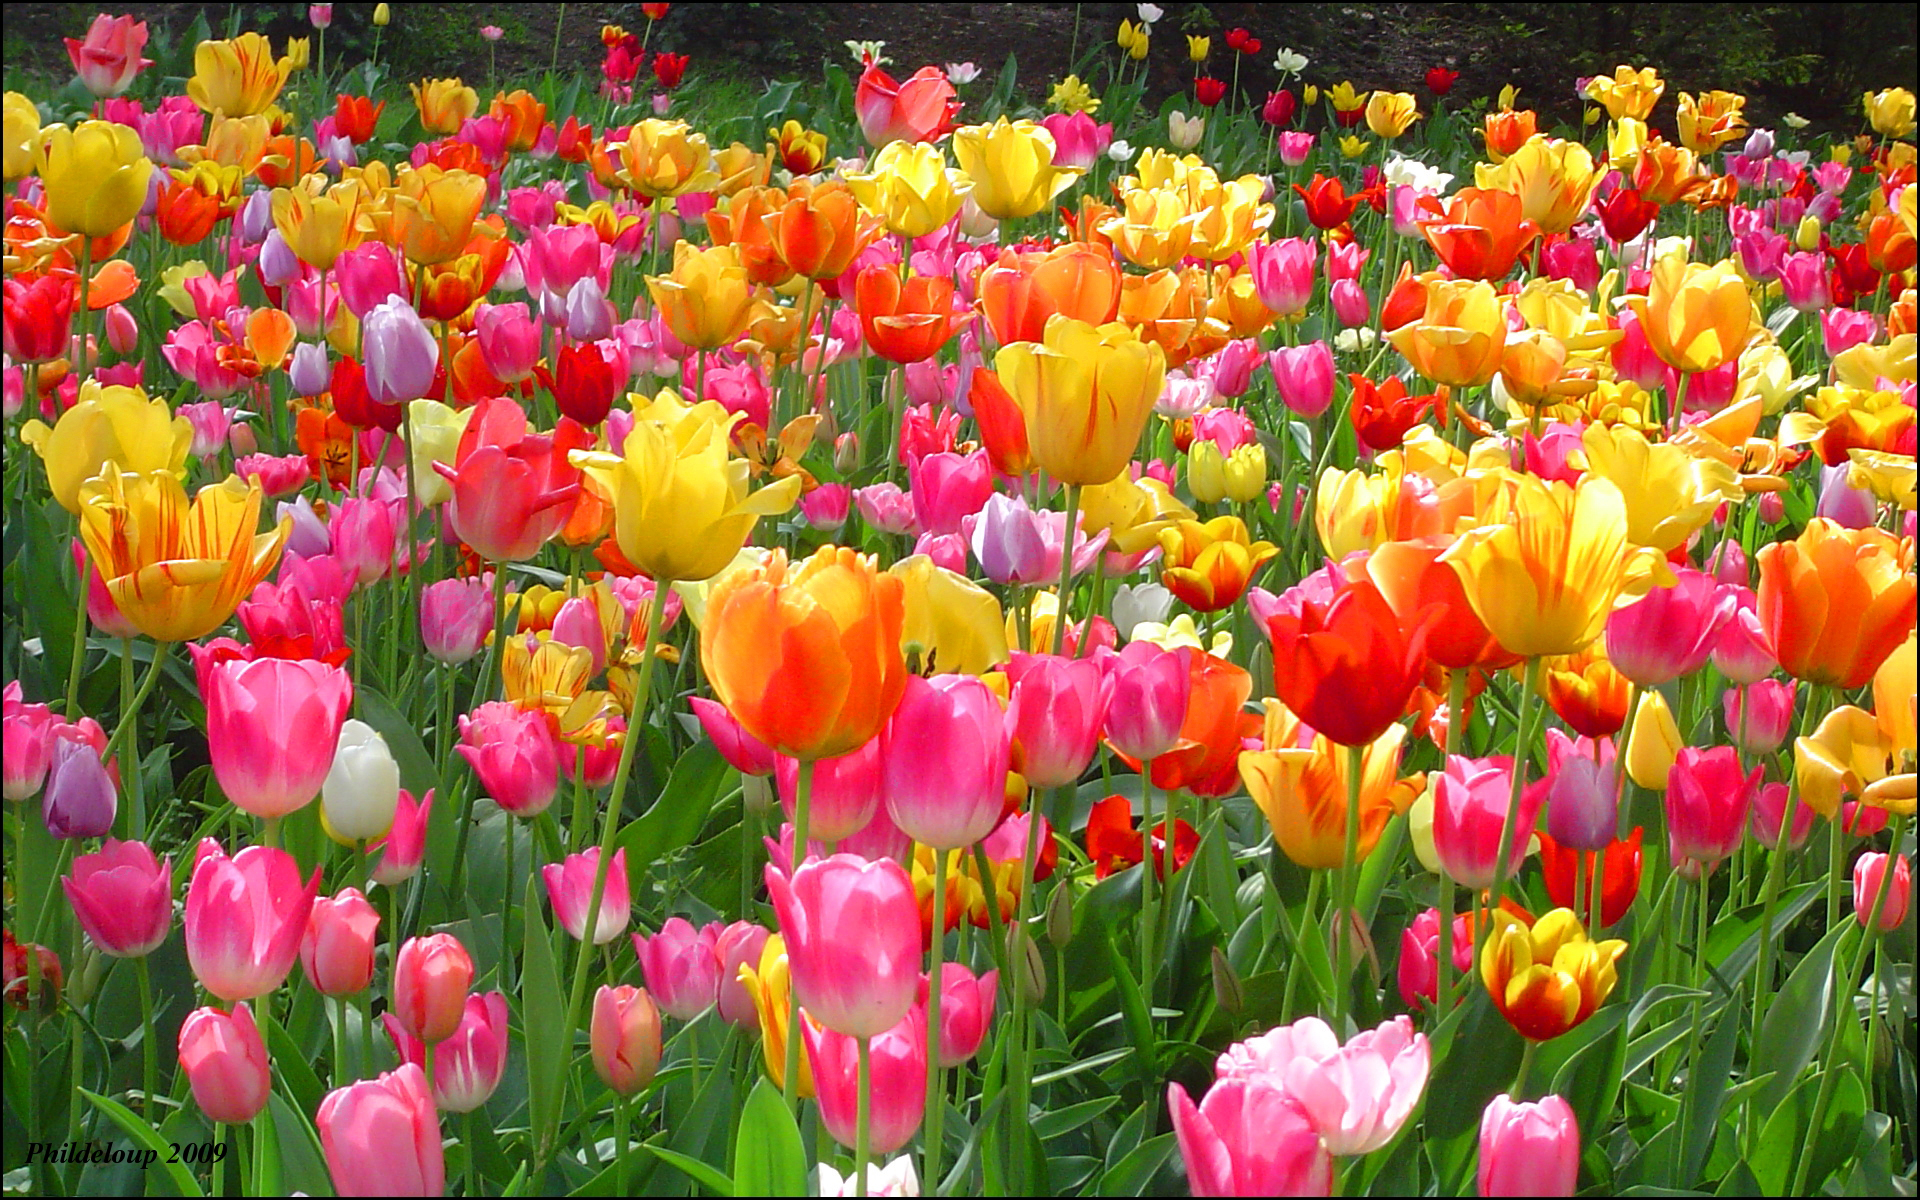 Hình nền Hoa Tulip - Bạn muốn tìm kiếm một hình nền máy tính đẹp mắt và hấp dẫn? Hãy xem hình ảnh Hoa Tulip đầy tinh tế và nghệ thuật này. Với màu sắc rực rỡ và kiểu dáng đẹp mắt, hình nền này sẽ làm cho màn hình máy tính của bạn trở nên sống động và thu hút hơn.